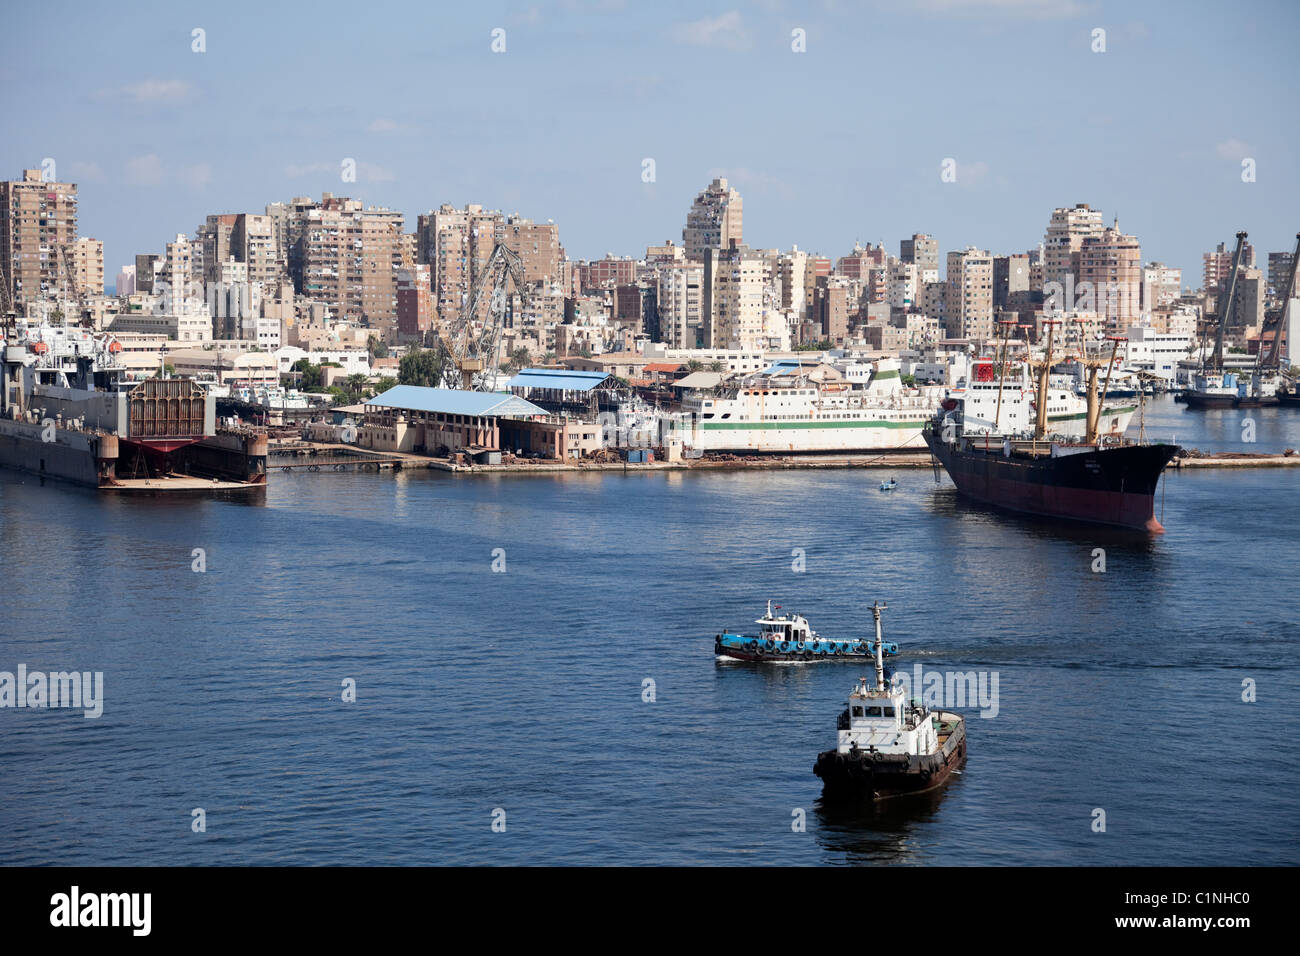 Donnant sur la vue de l'intérieur du port d'Alexandrie et la ville. Banque D'Images